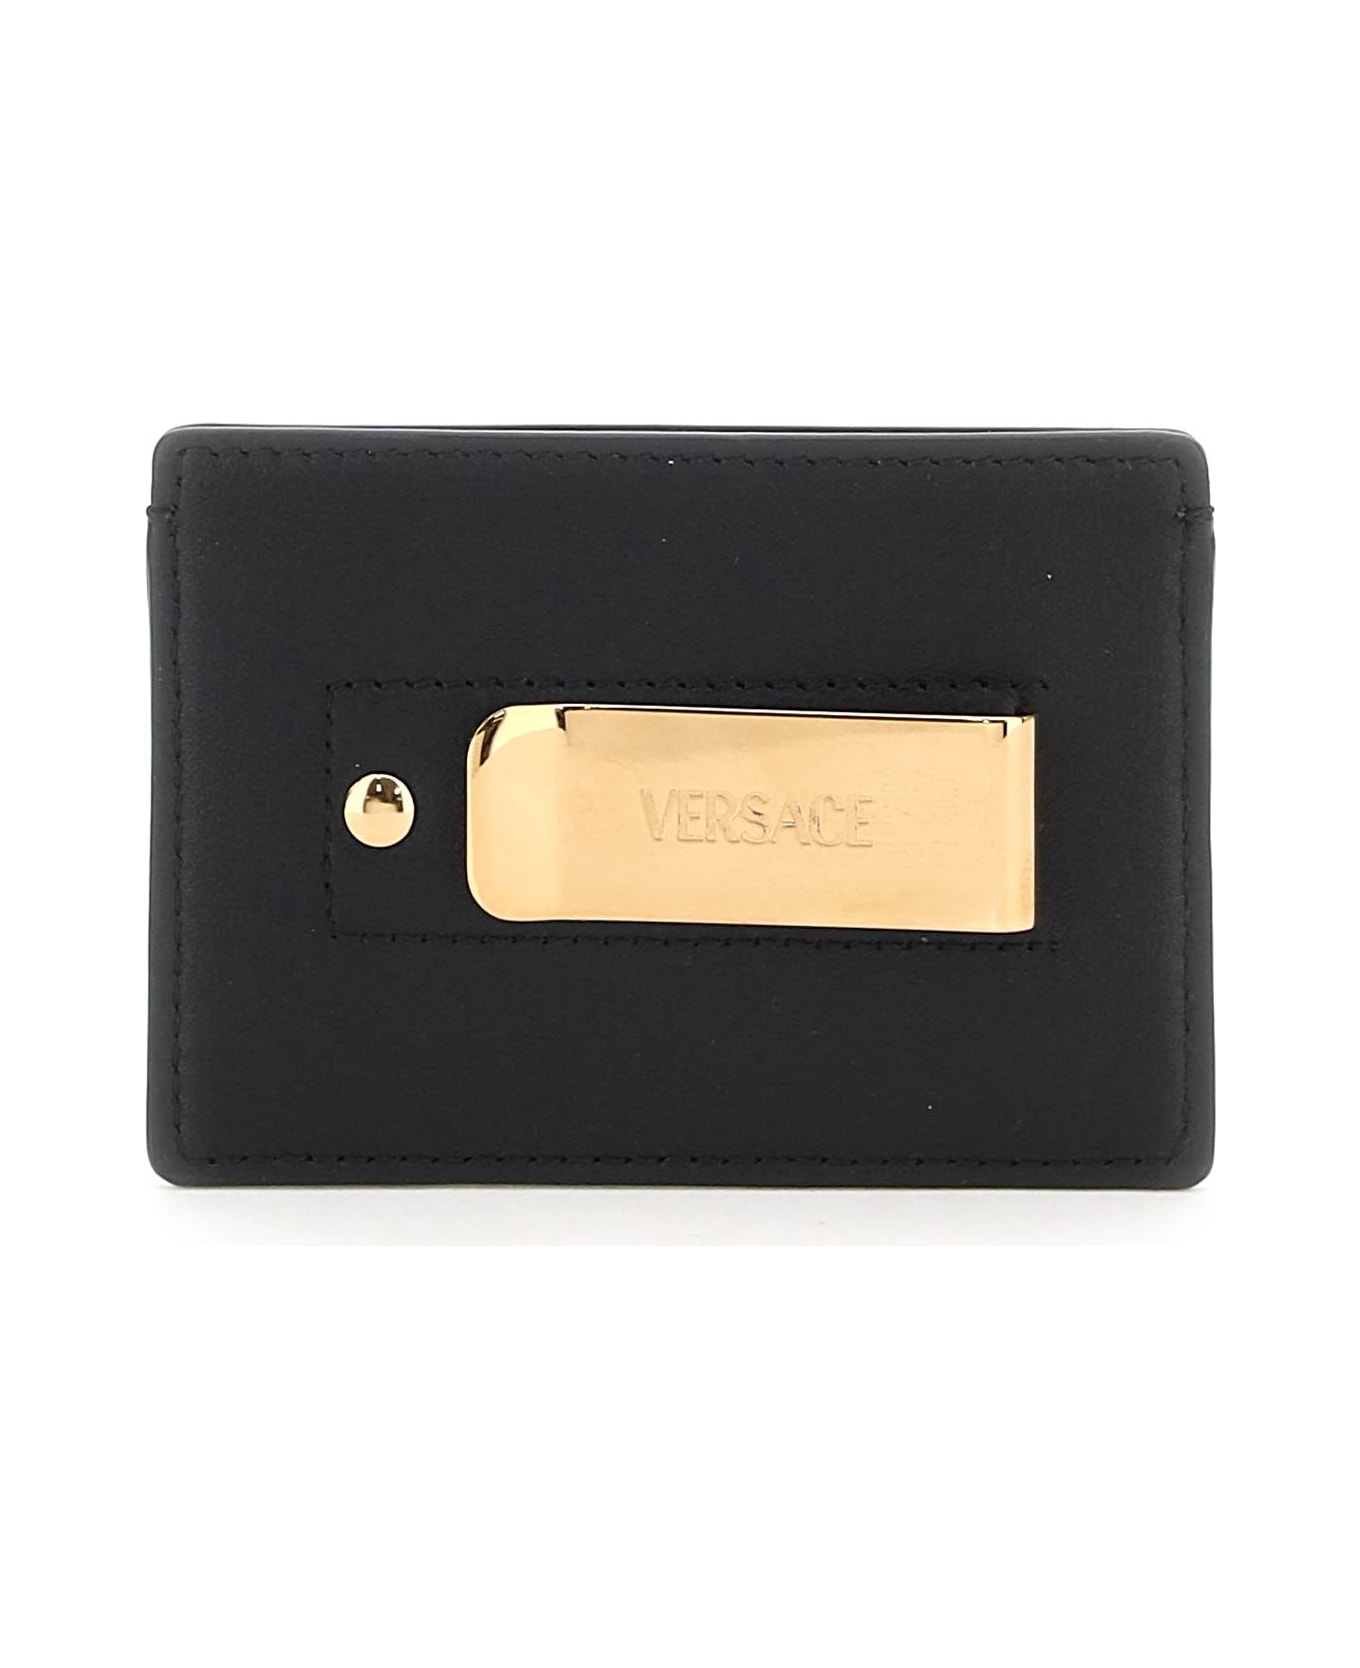 Versace Medusa Cards Holder - Black